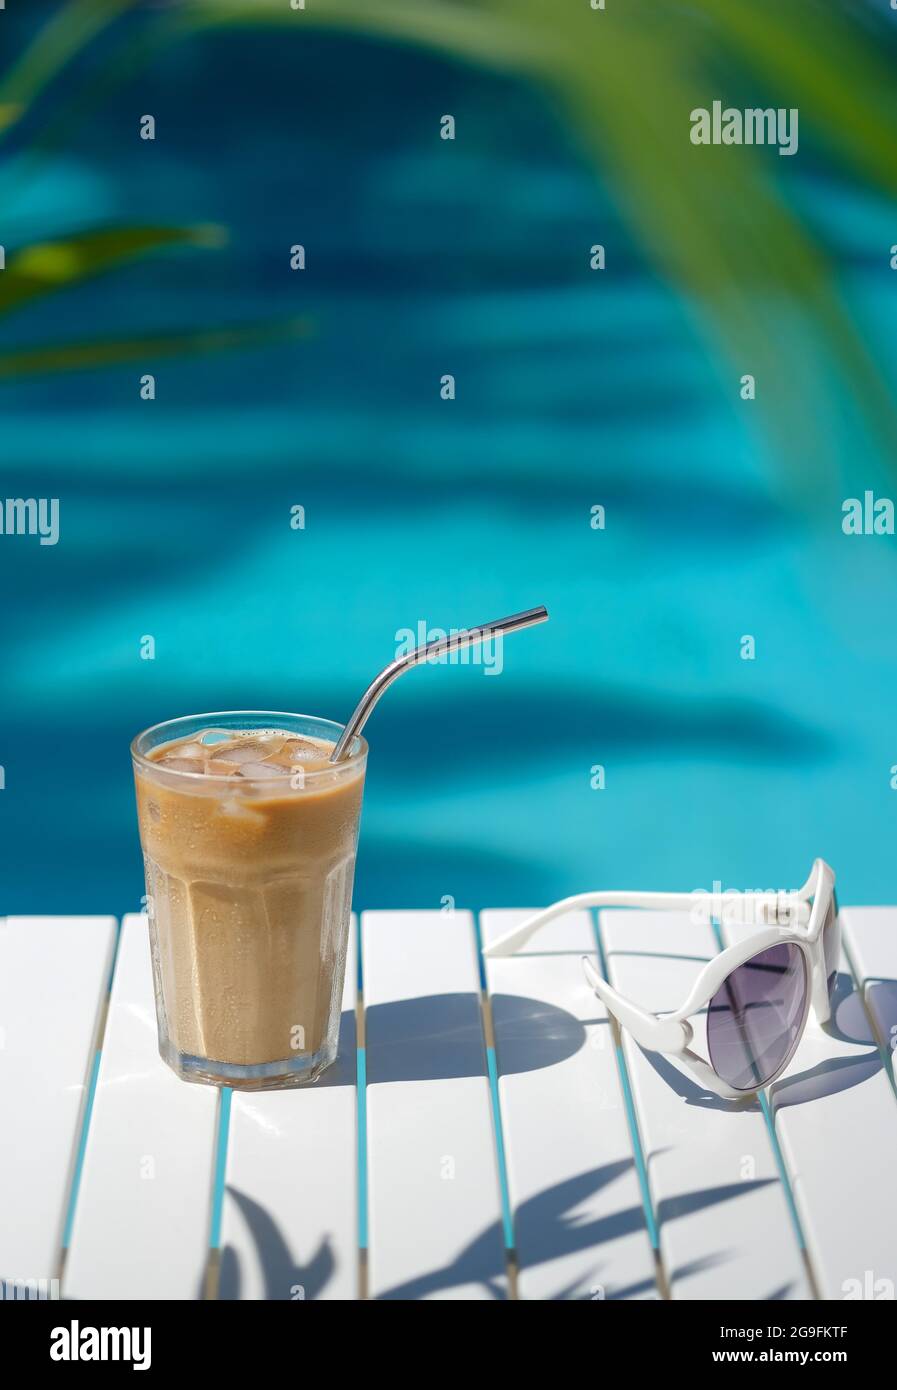 Café glacé Cyprus Frappe Fredo contre bleu eau claire de la piscine, sur table blanche, avec des lunettes de soleil. Arrière-plan minimaliste d'été, vacances Banque D'Images